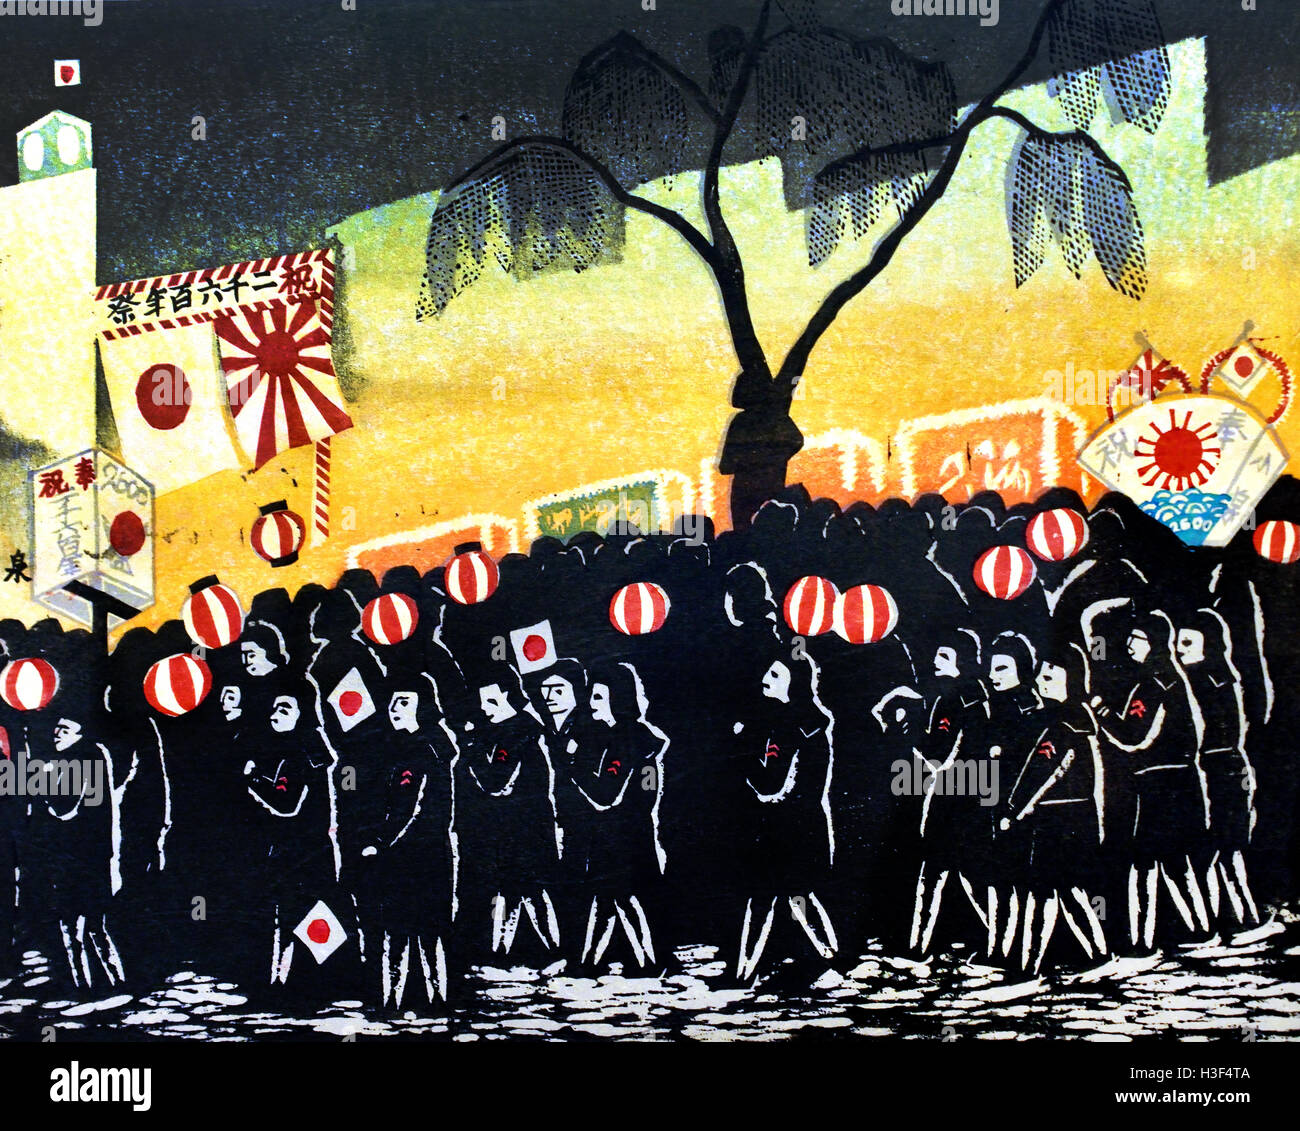 Titre:célébration de 2600 ans de règne impérial 1940-45 Koizumi Kishio (1893-1945) Tokyo Japon ( couleur xylographie sur papier ) Banque D'Images